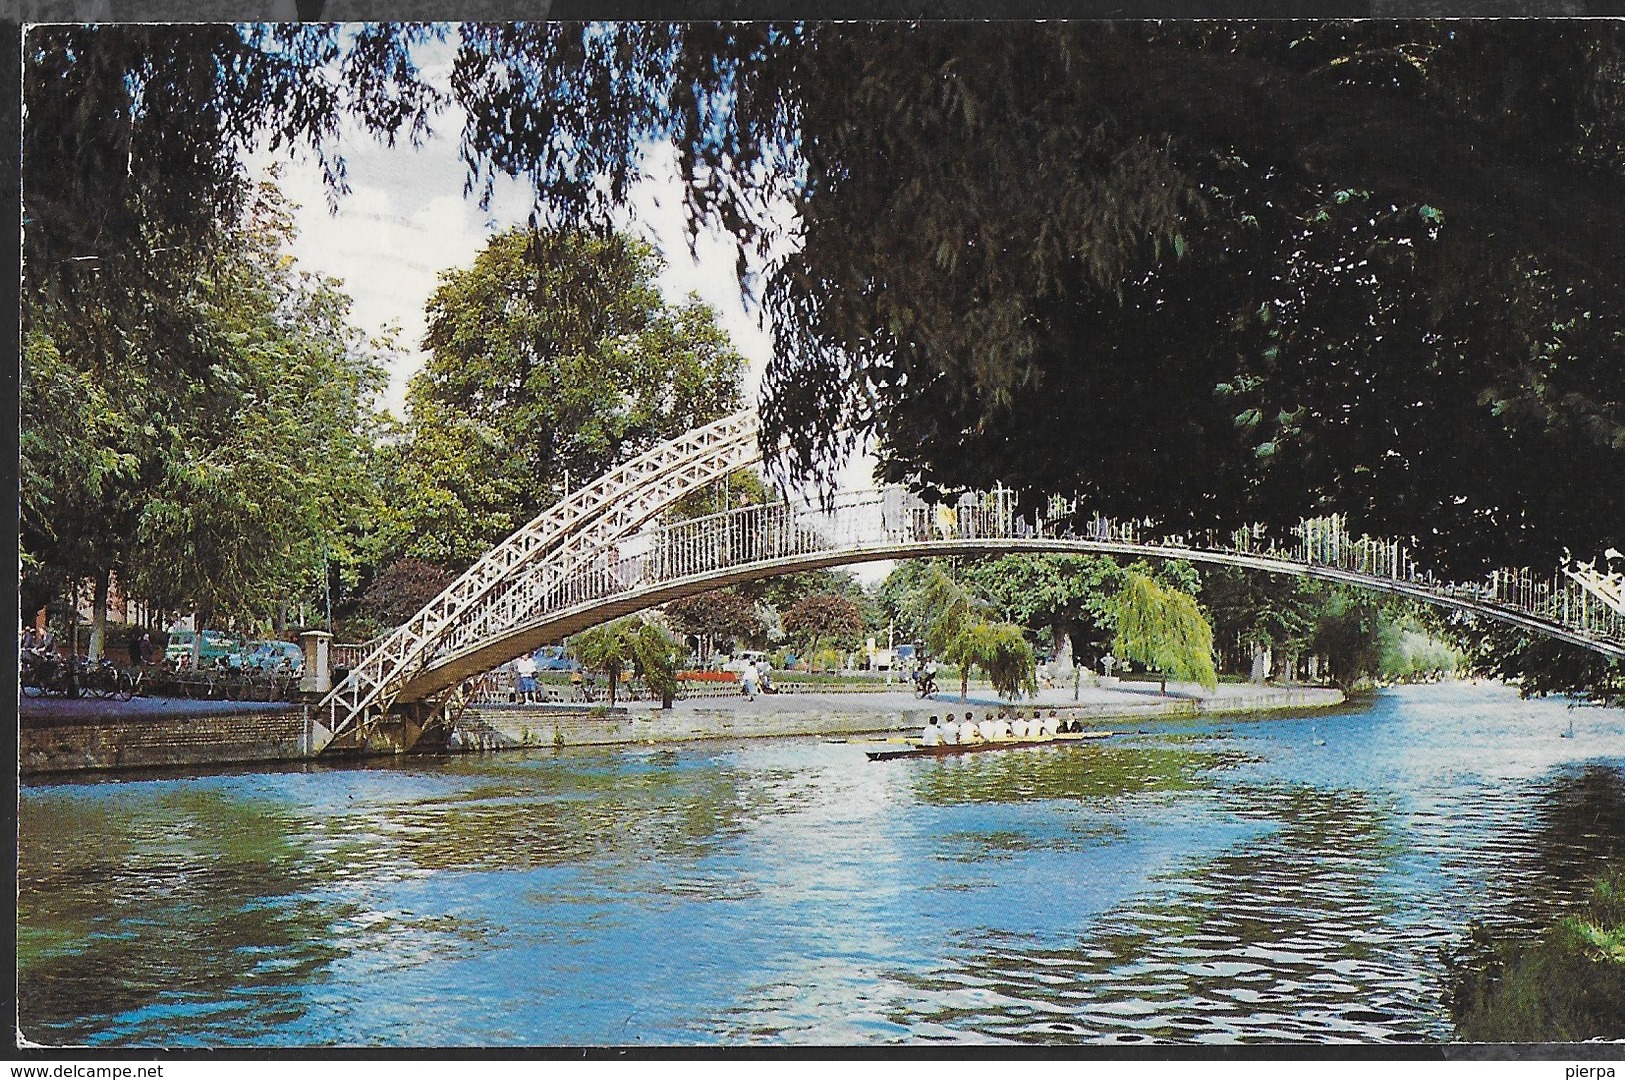 INGHILTERRA - BEDFORD - THE SUSPENSION BRIDGE  - FORMATO PICCOLO - VIAGGIATA 1972 FRANCOBOLLO ASPORTATO - Bedford